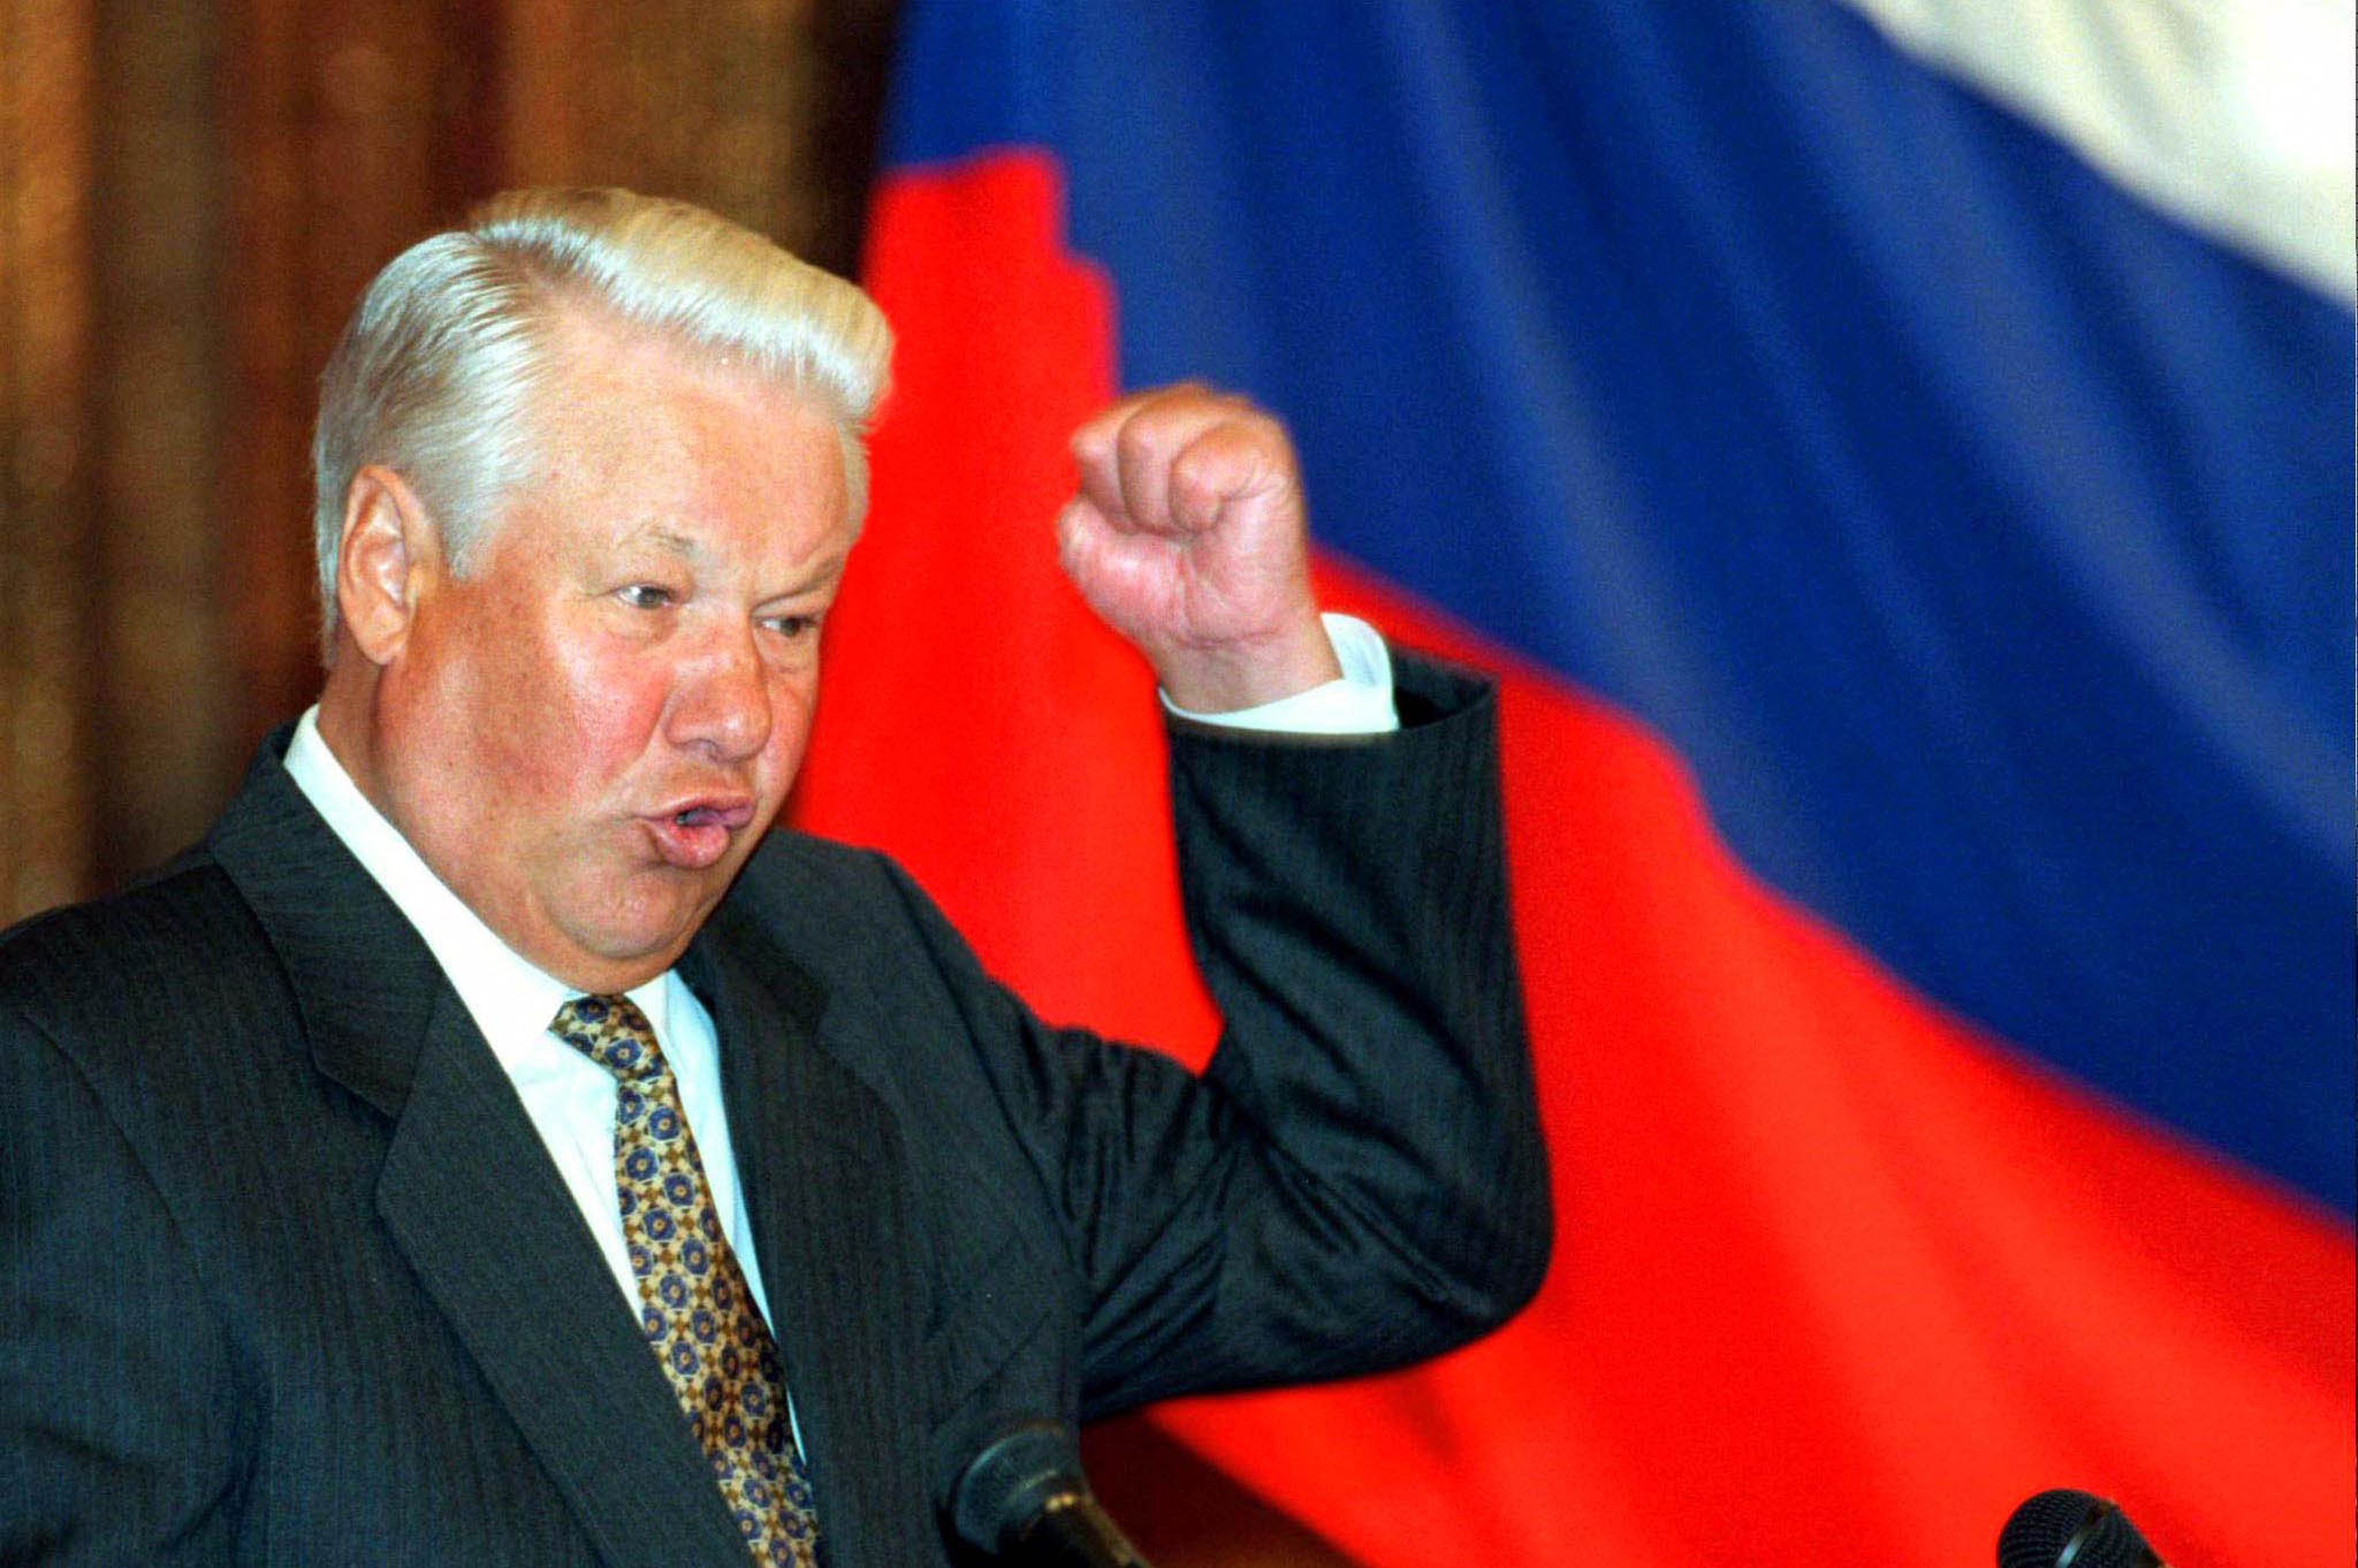 Con el anterior presidente, Boris Yeltsin, los oligarcas rusos tenían cierto poder para actuar libremente. Eso cambió con Putin.